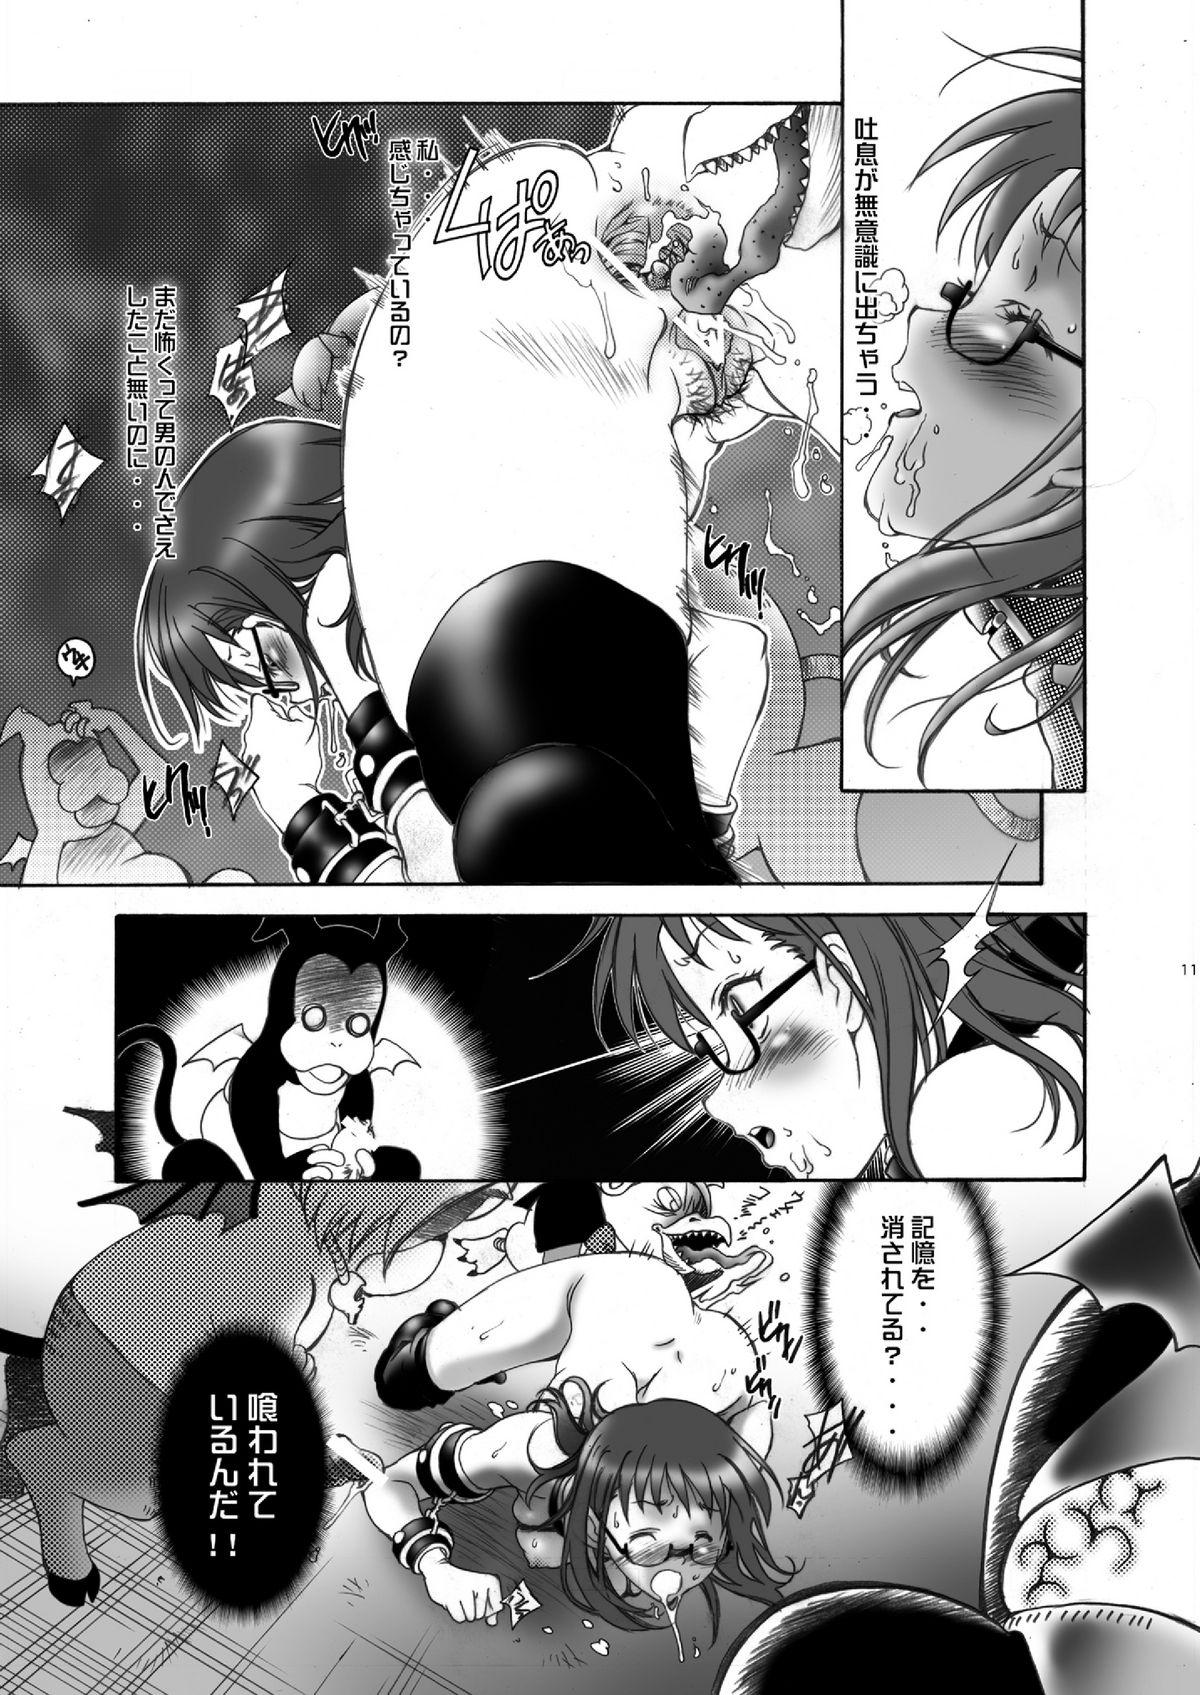 Piss Ittemasuyo! Saku-chan. - Yondemasuyo azazel san Amazing - Page 11